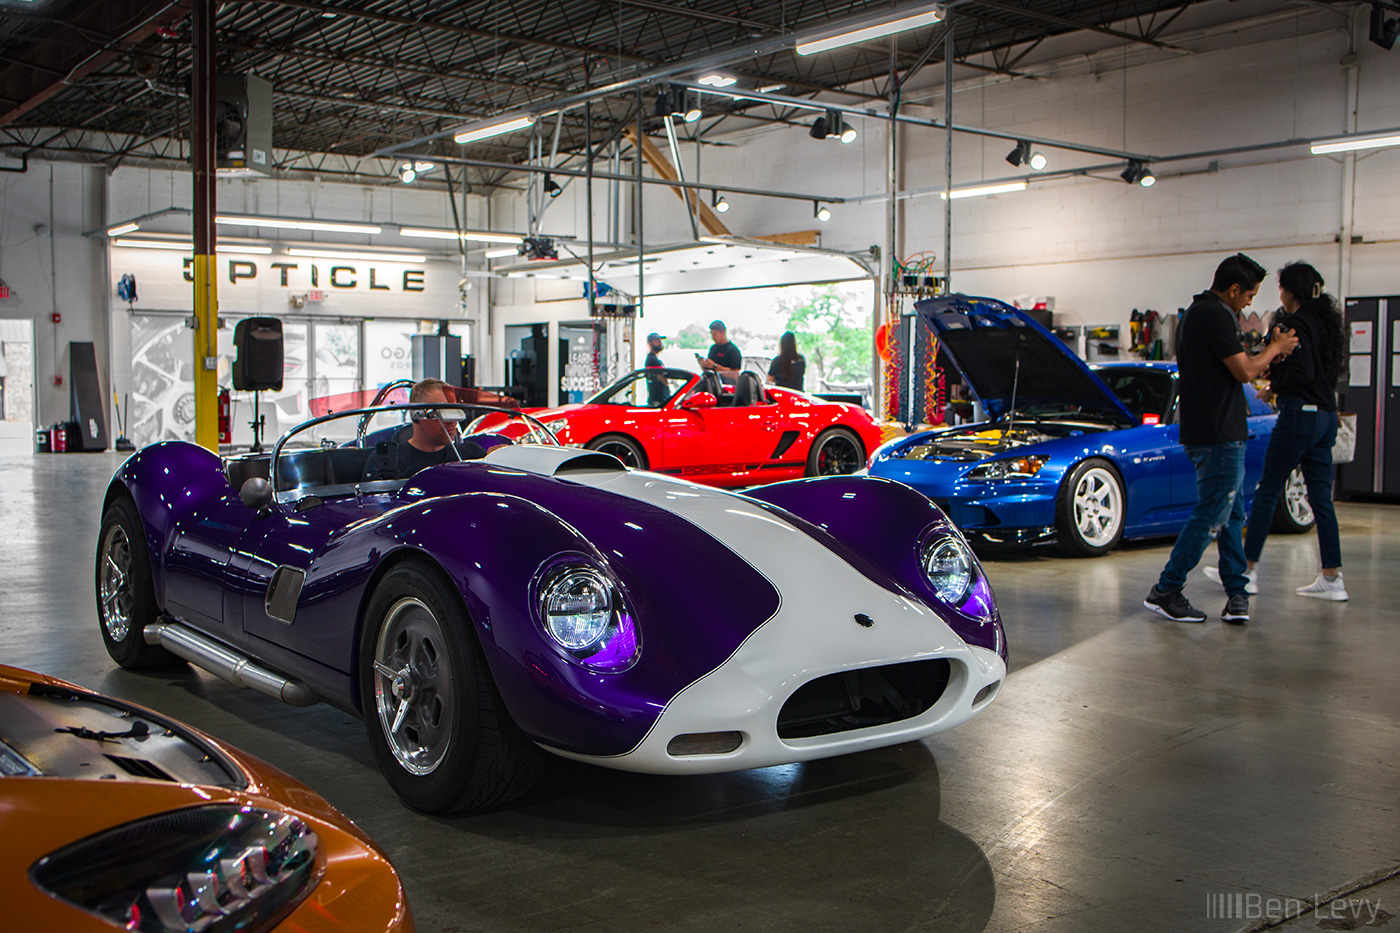 Purple Beck Lister Roadster in Car Detailing Shop